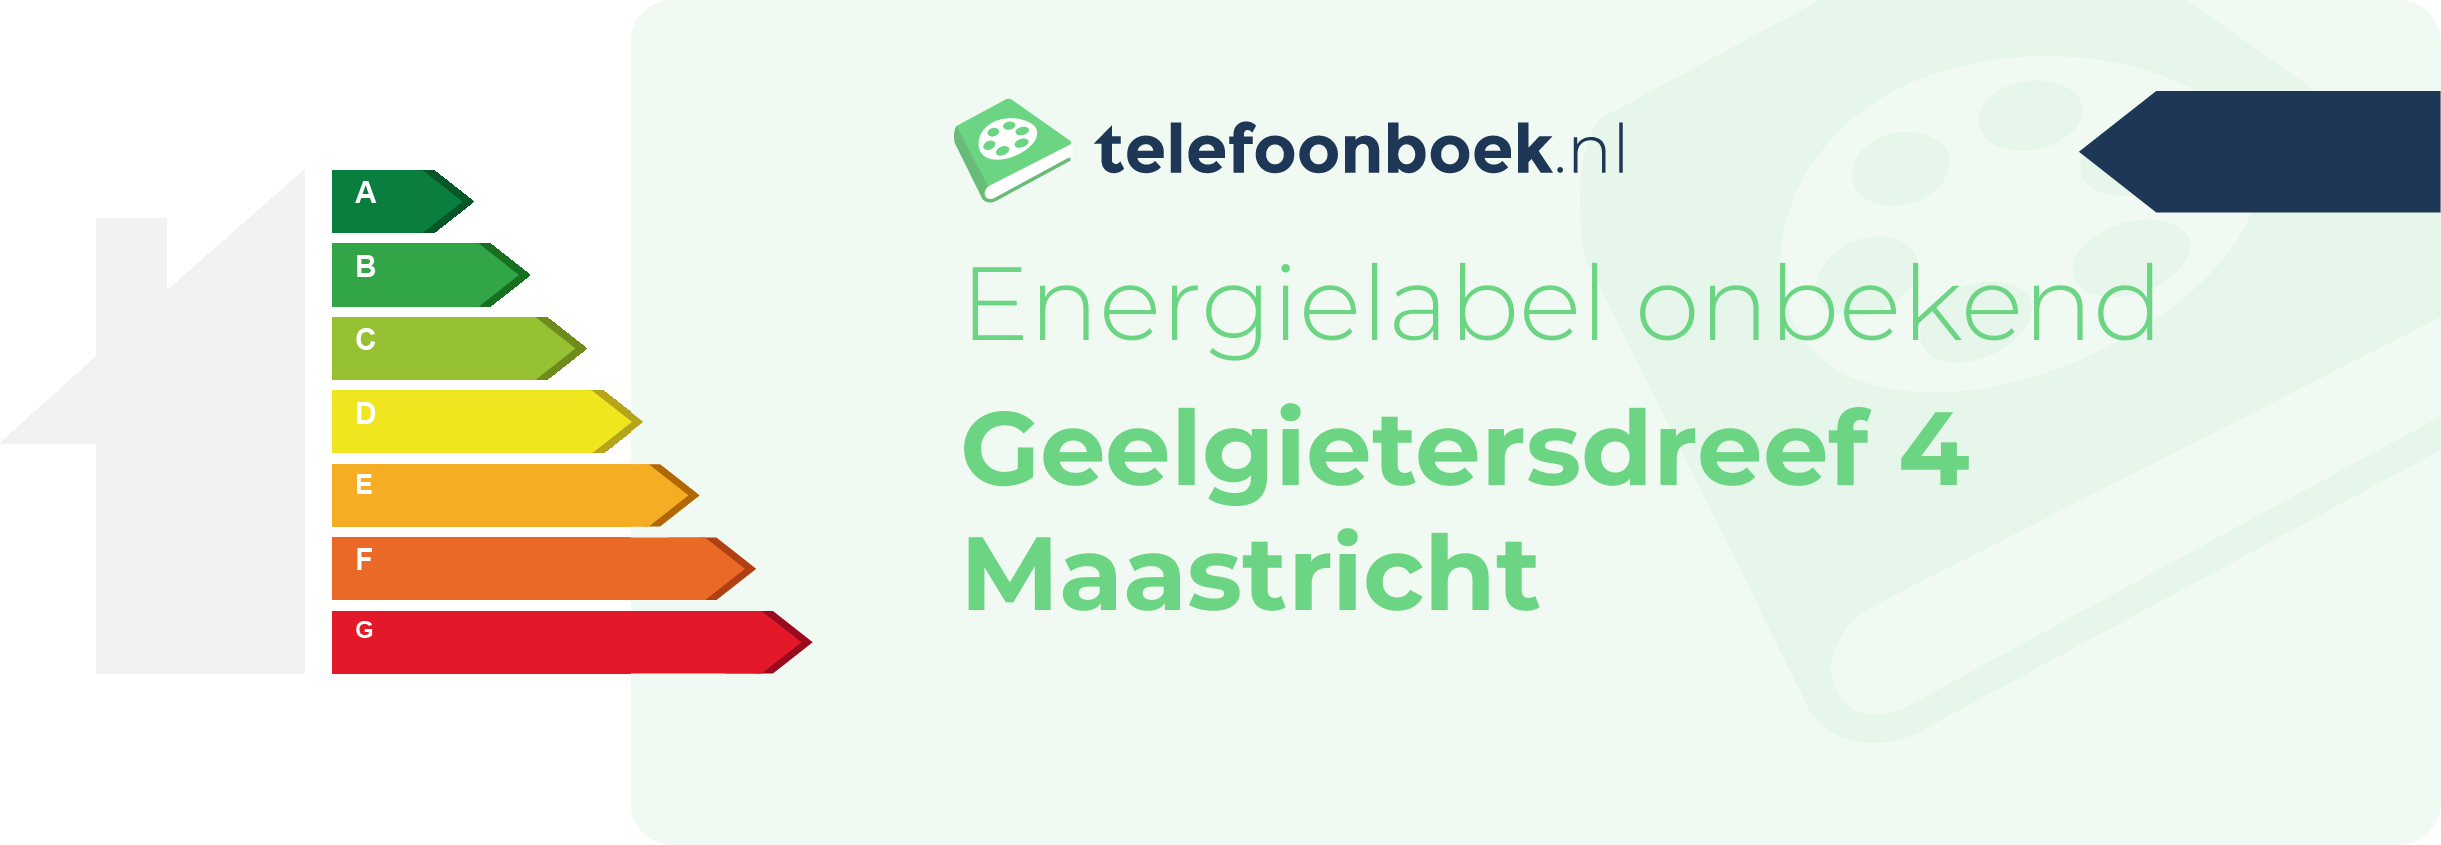 Energielabel Geelgietersdreef 4 Maastricht